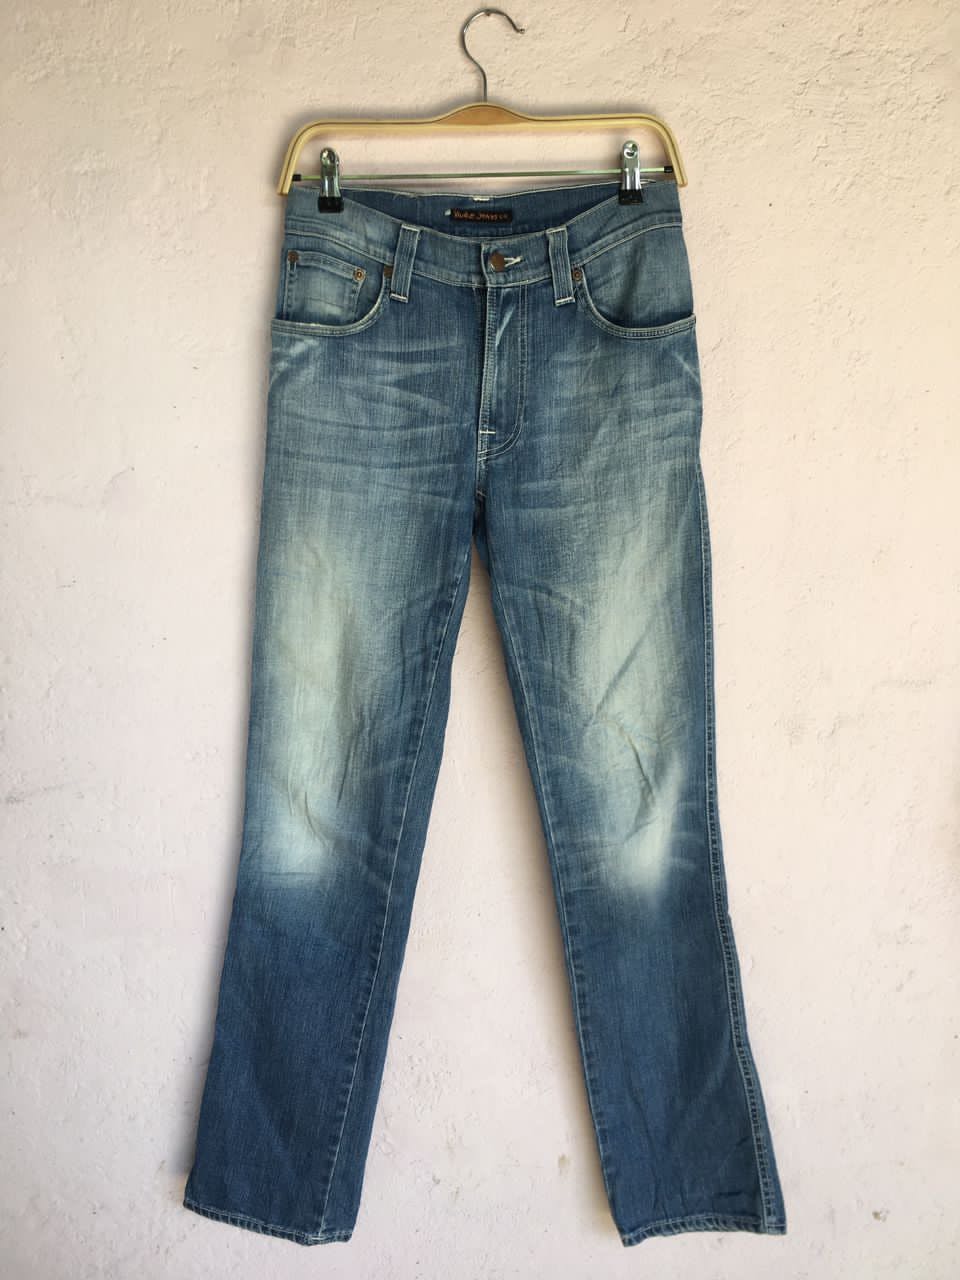 Nudie jeans.co Denim Slim jeans Men’s Pants made in Italy - 4